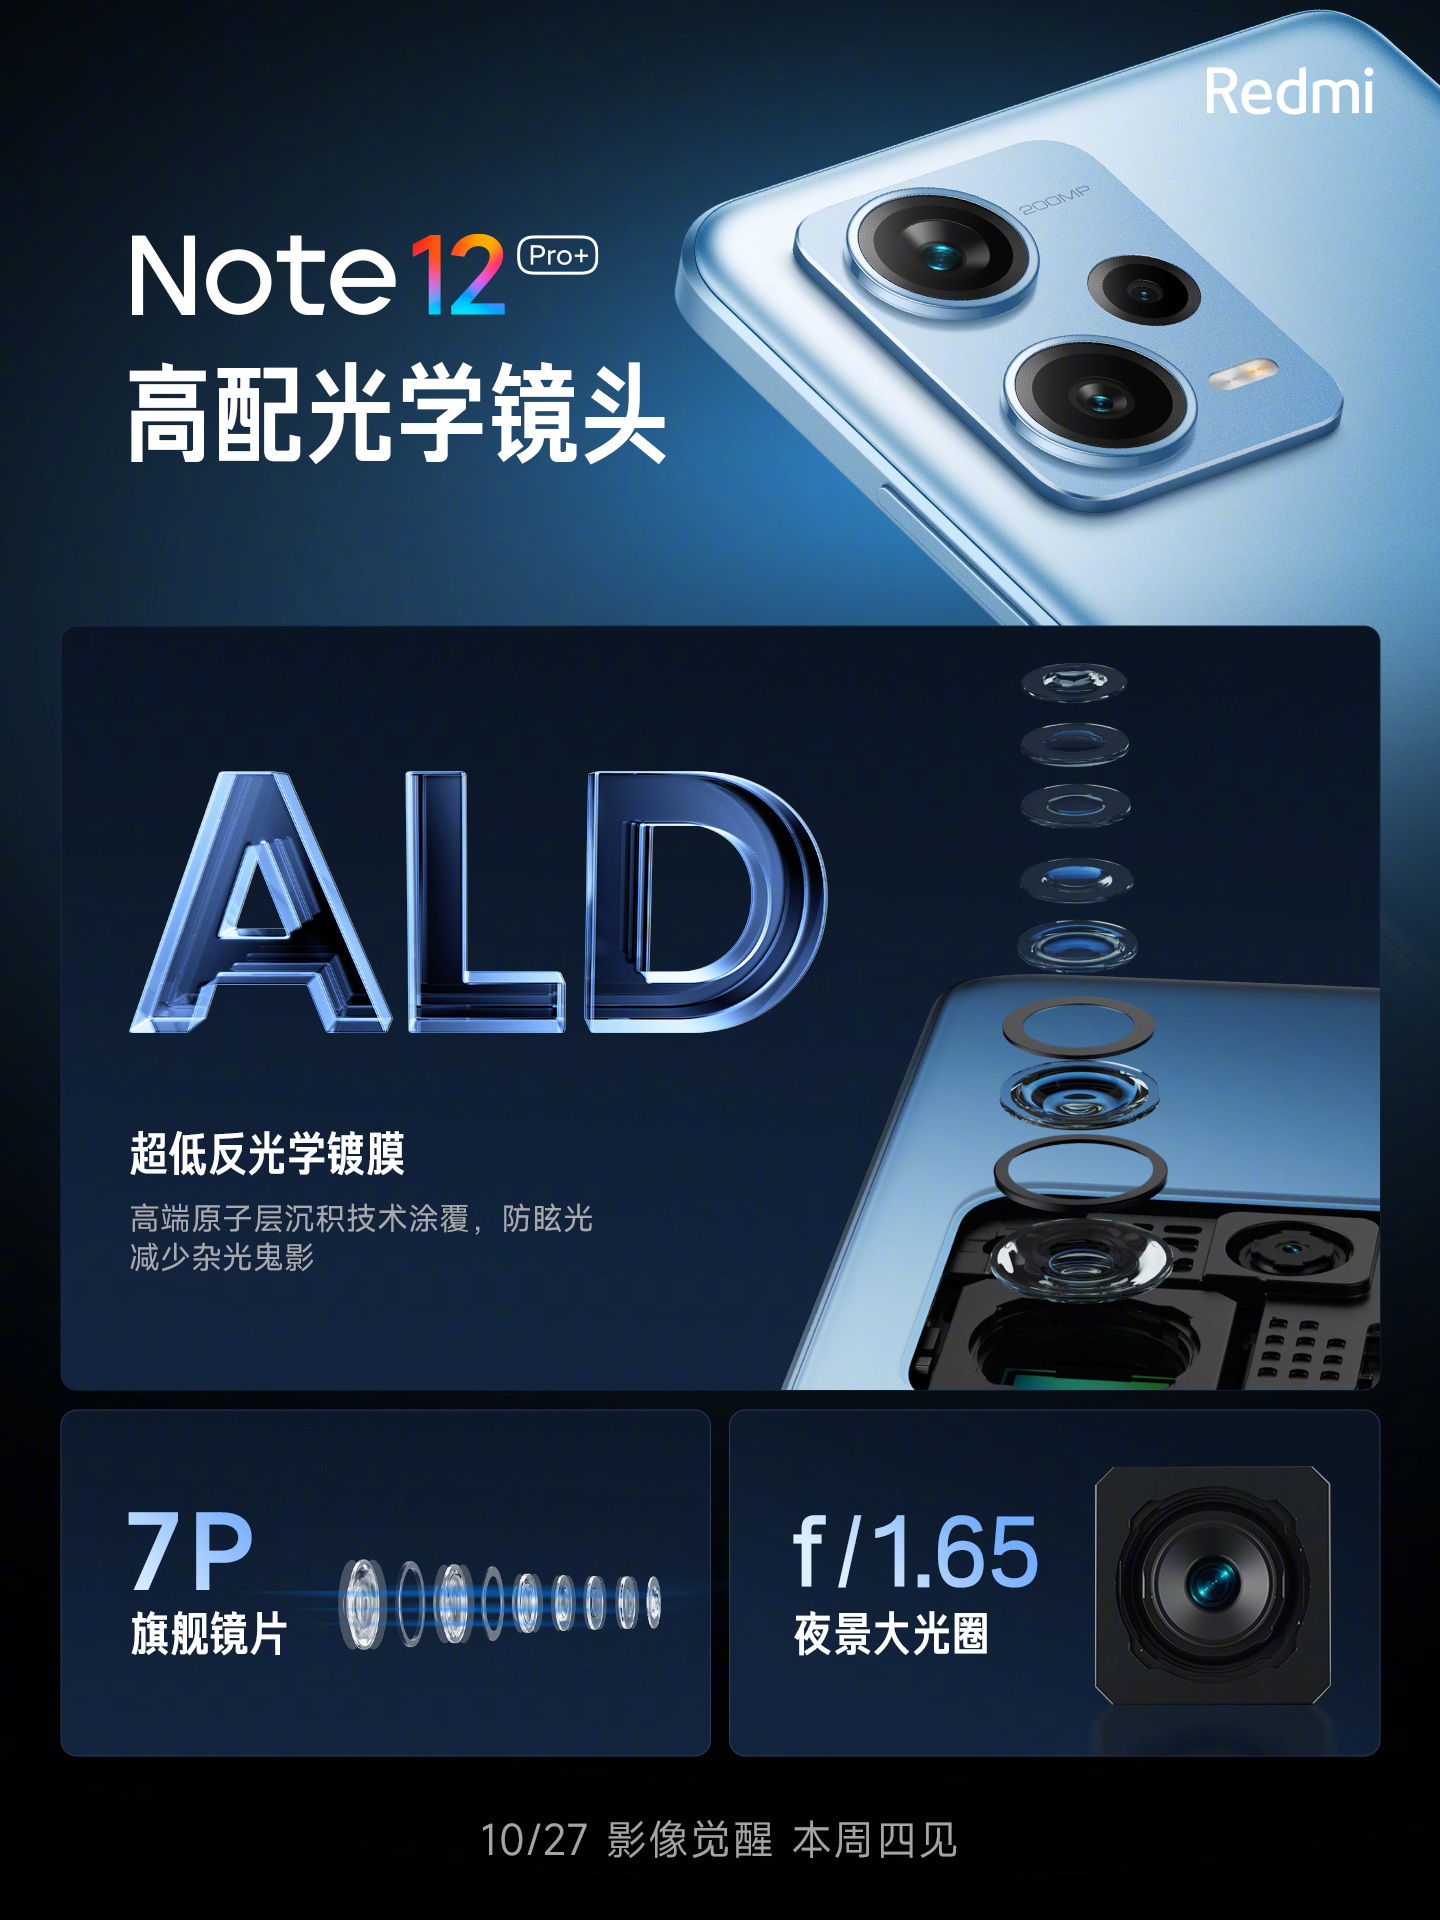 Redmi Note 12 Pro+ 200 MP camera